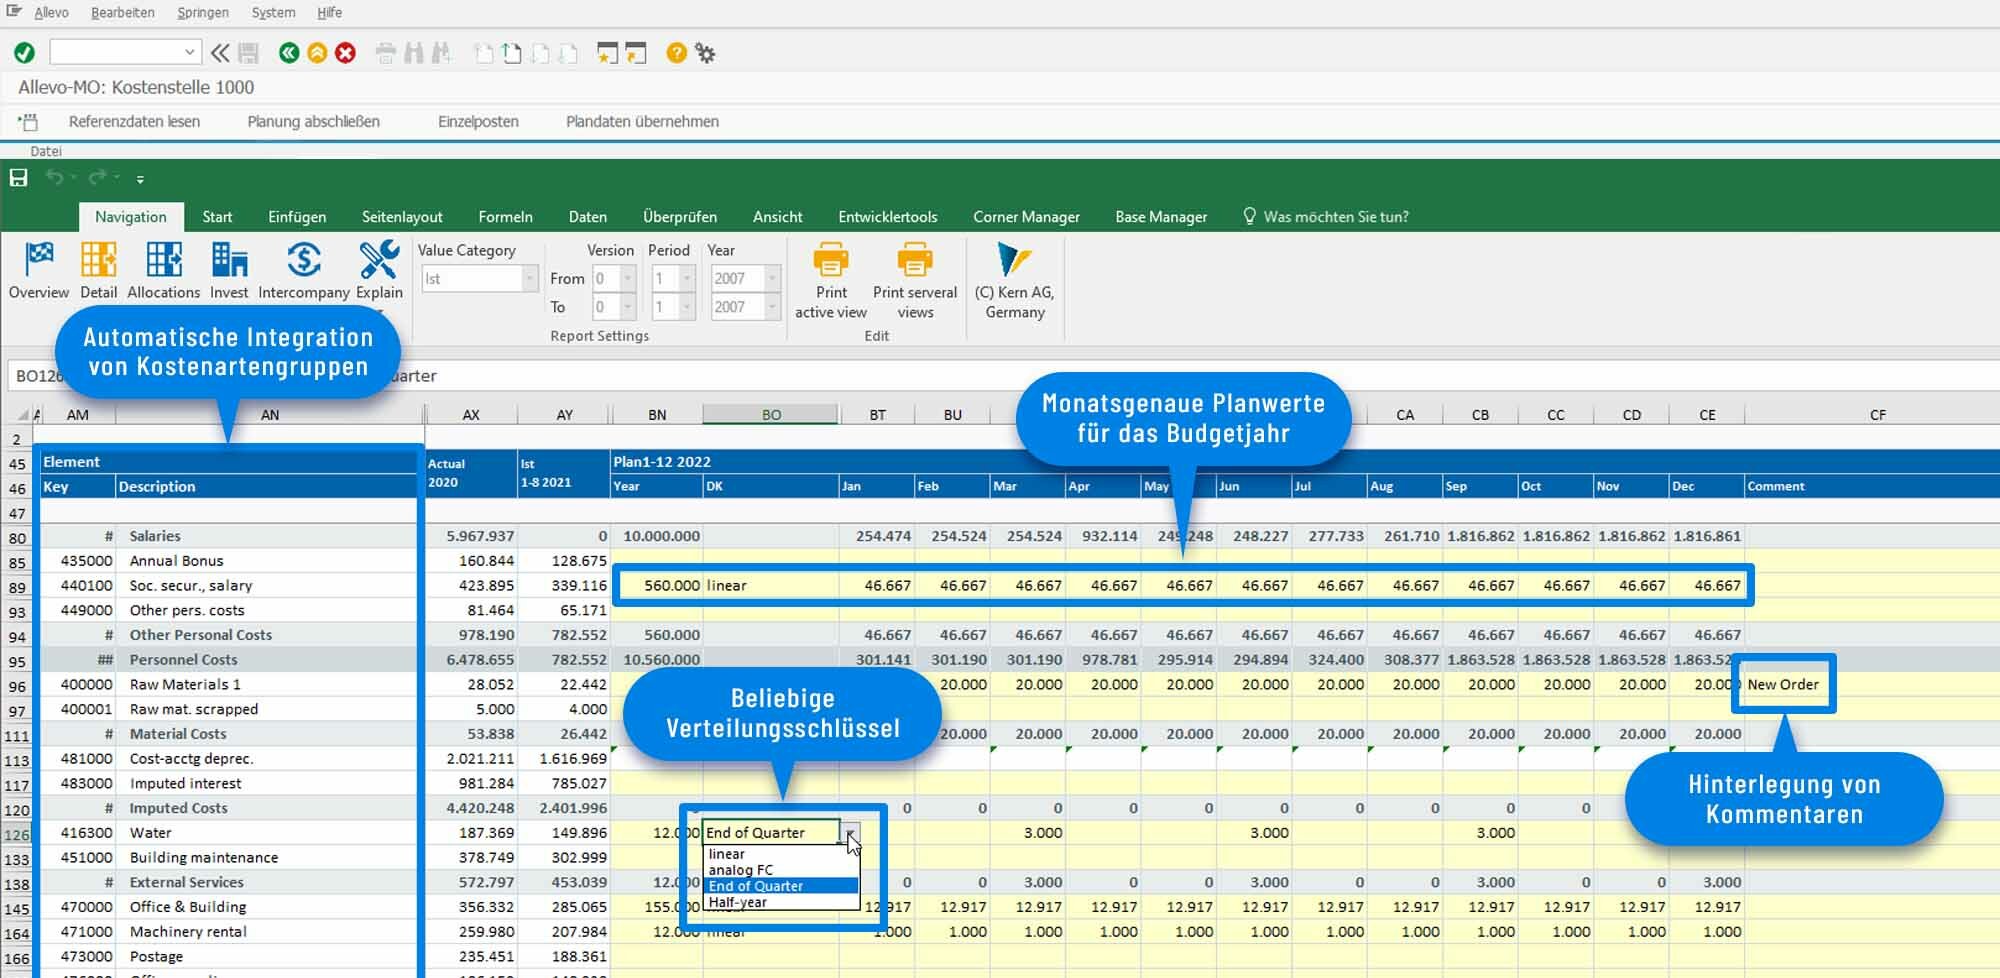 Excel-Vorlage für die Planung von Controlling-Objekten in SAP